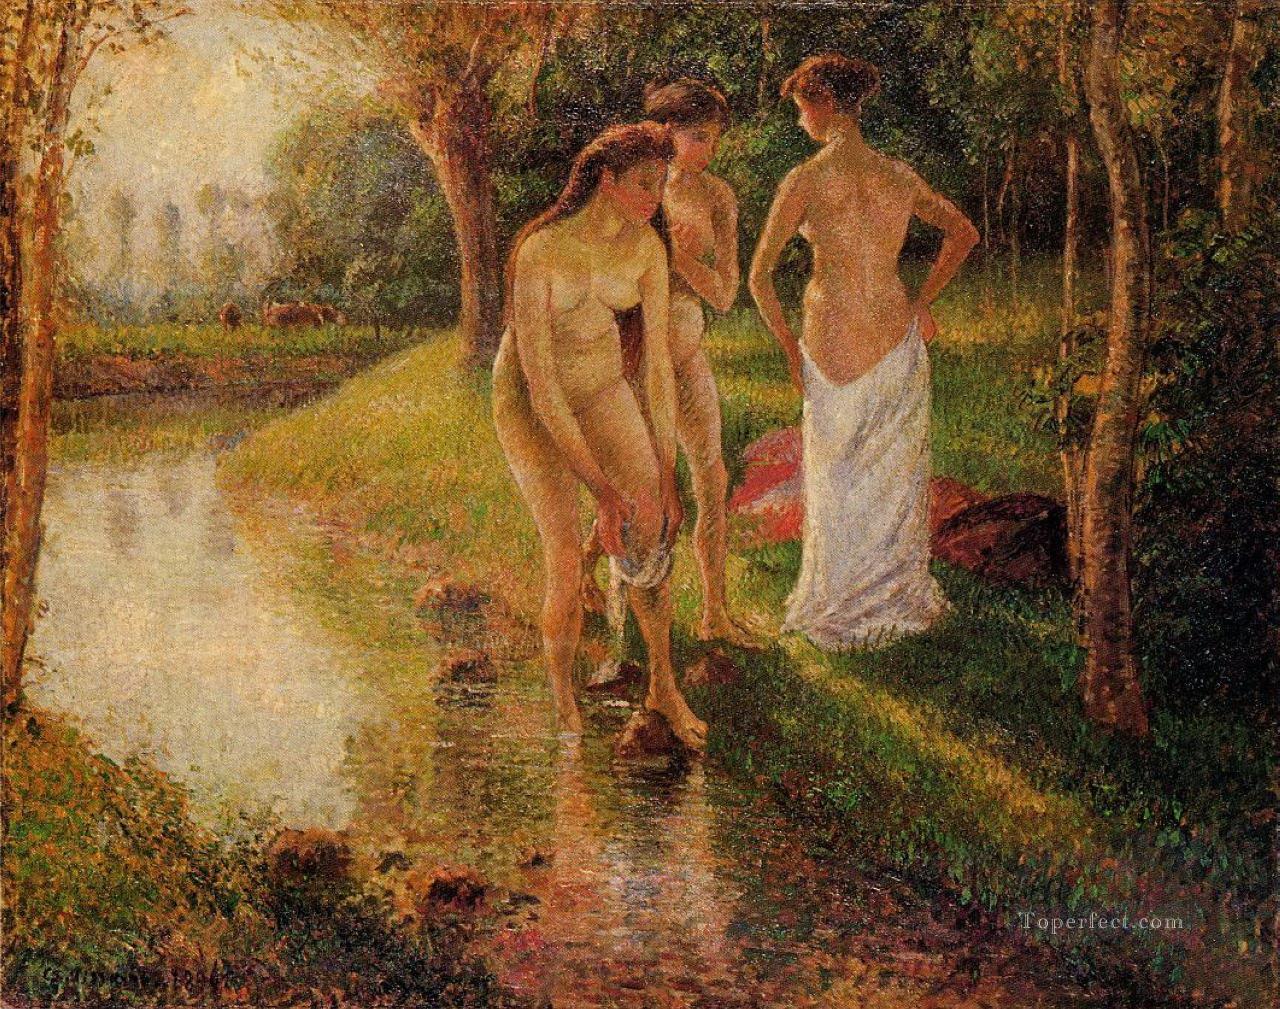 水浴びする人 1896年 カミーユ・ピサロ油絵